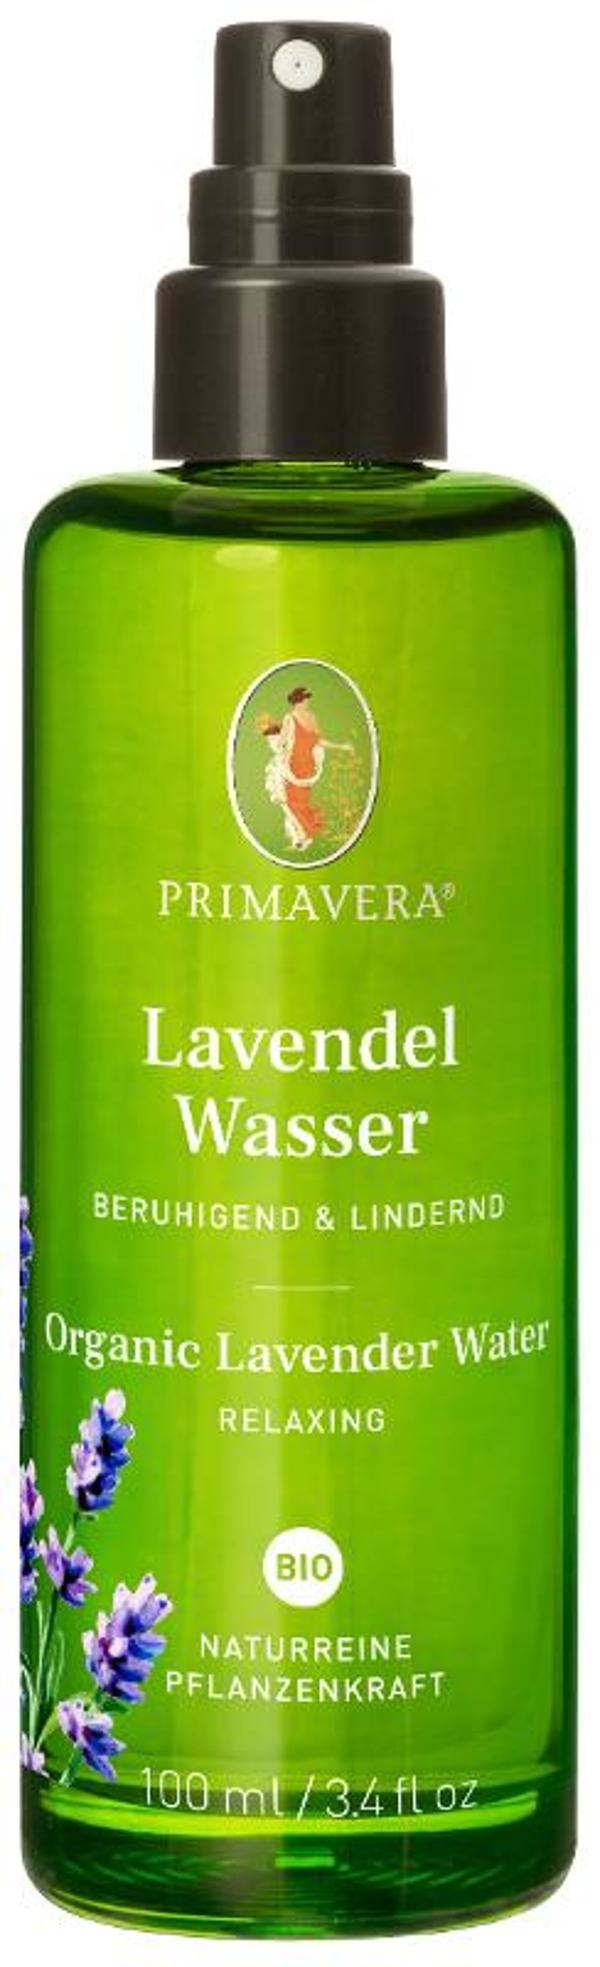 Produktfoto zu Lavendelwasser von Primavera